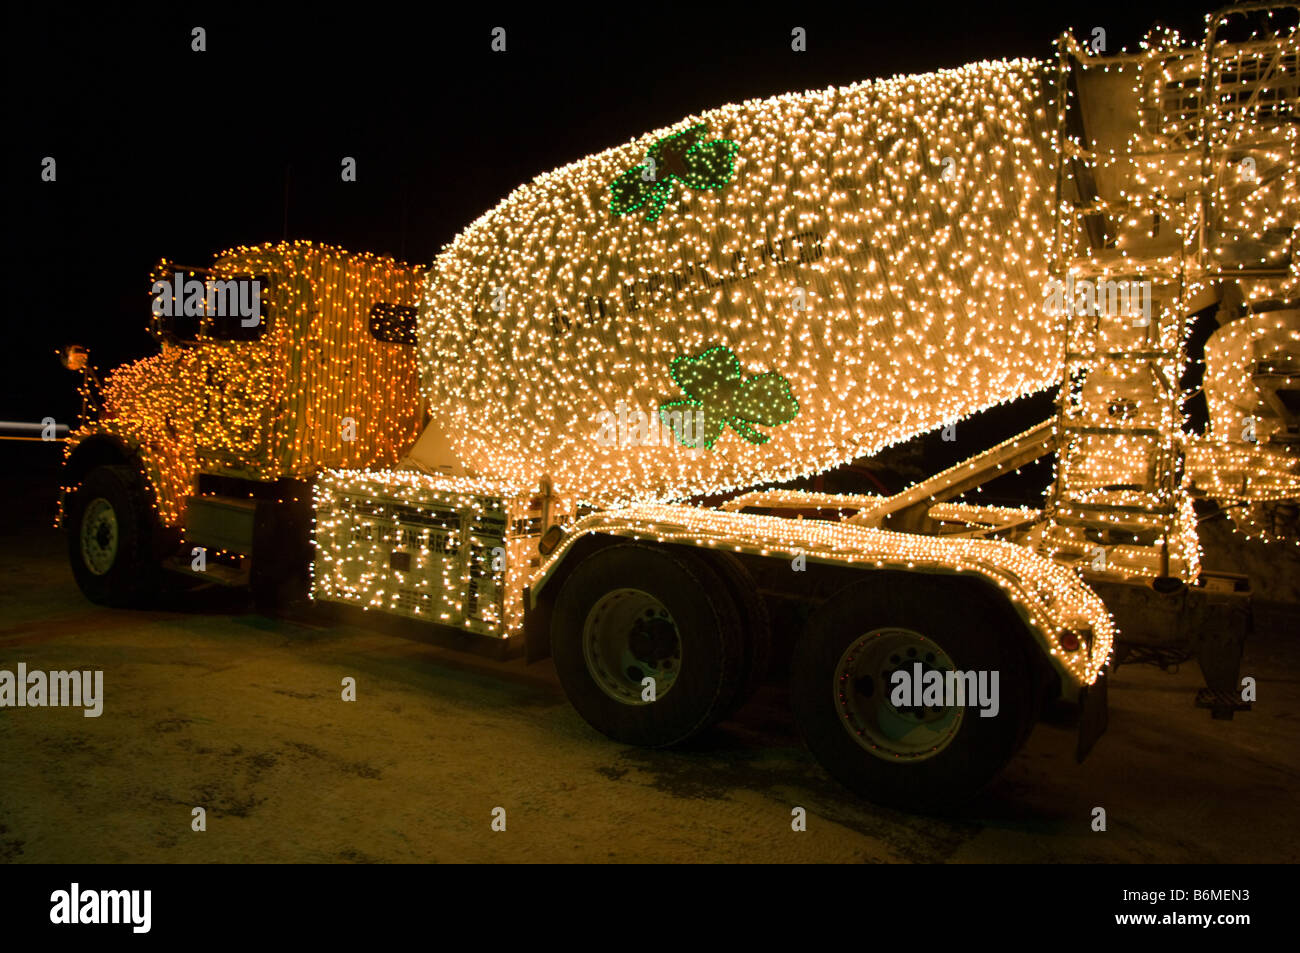 Betonmischer-LKW in Weihnachtsbeleuchtung am Fass Umweg abgedeckt. Redaktionelle Nutzung. Stockfoto